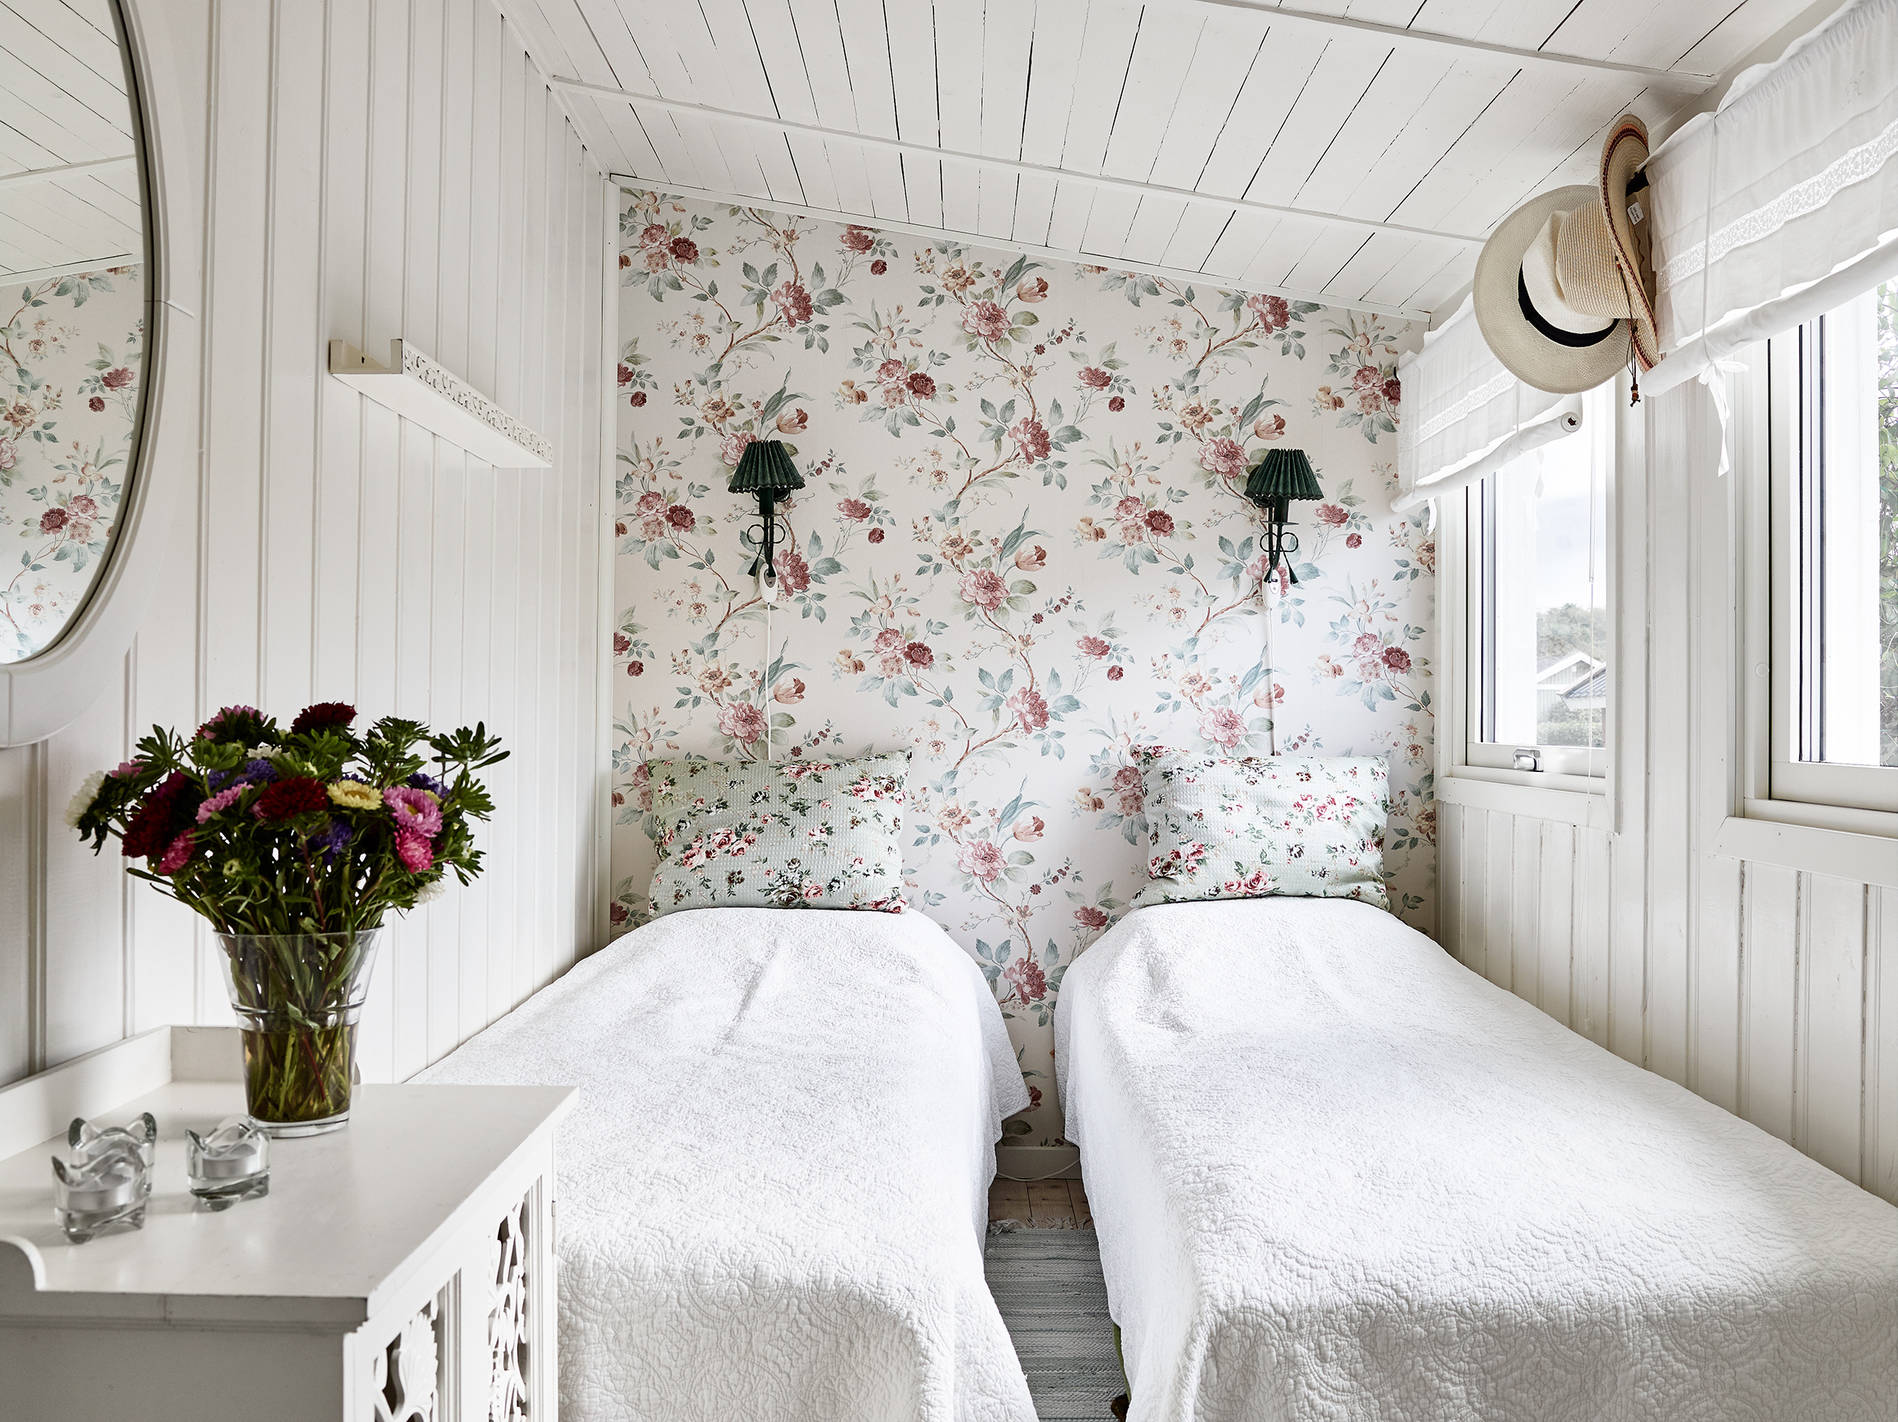 delikatissen pequeña cabaña madera papel de pared Motivos florales decoración flores y plantas decoración estilo sueco decoración femenina decoración exterior blog decoración nórdica 